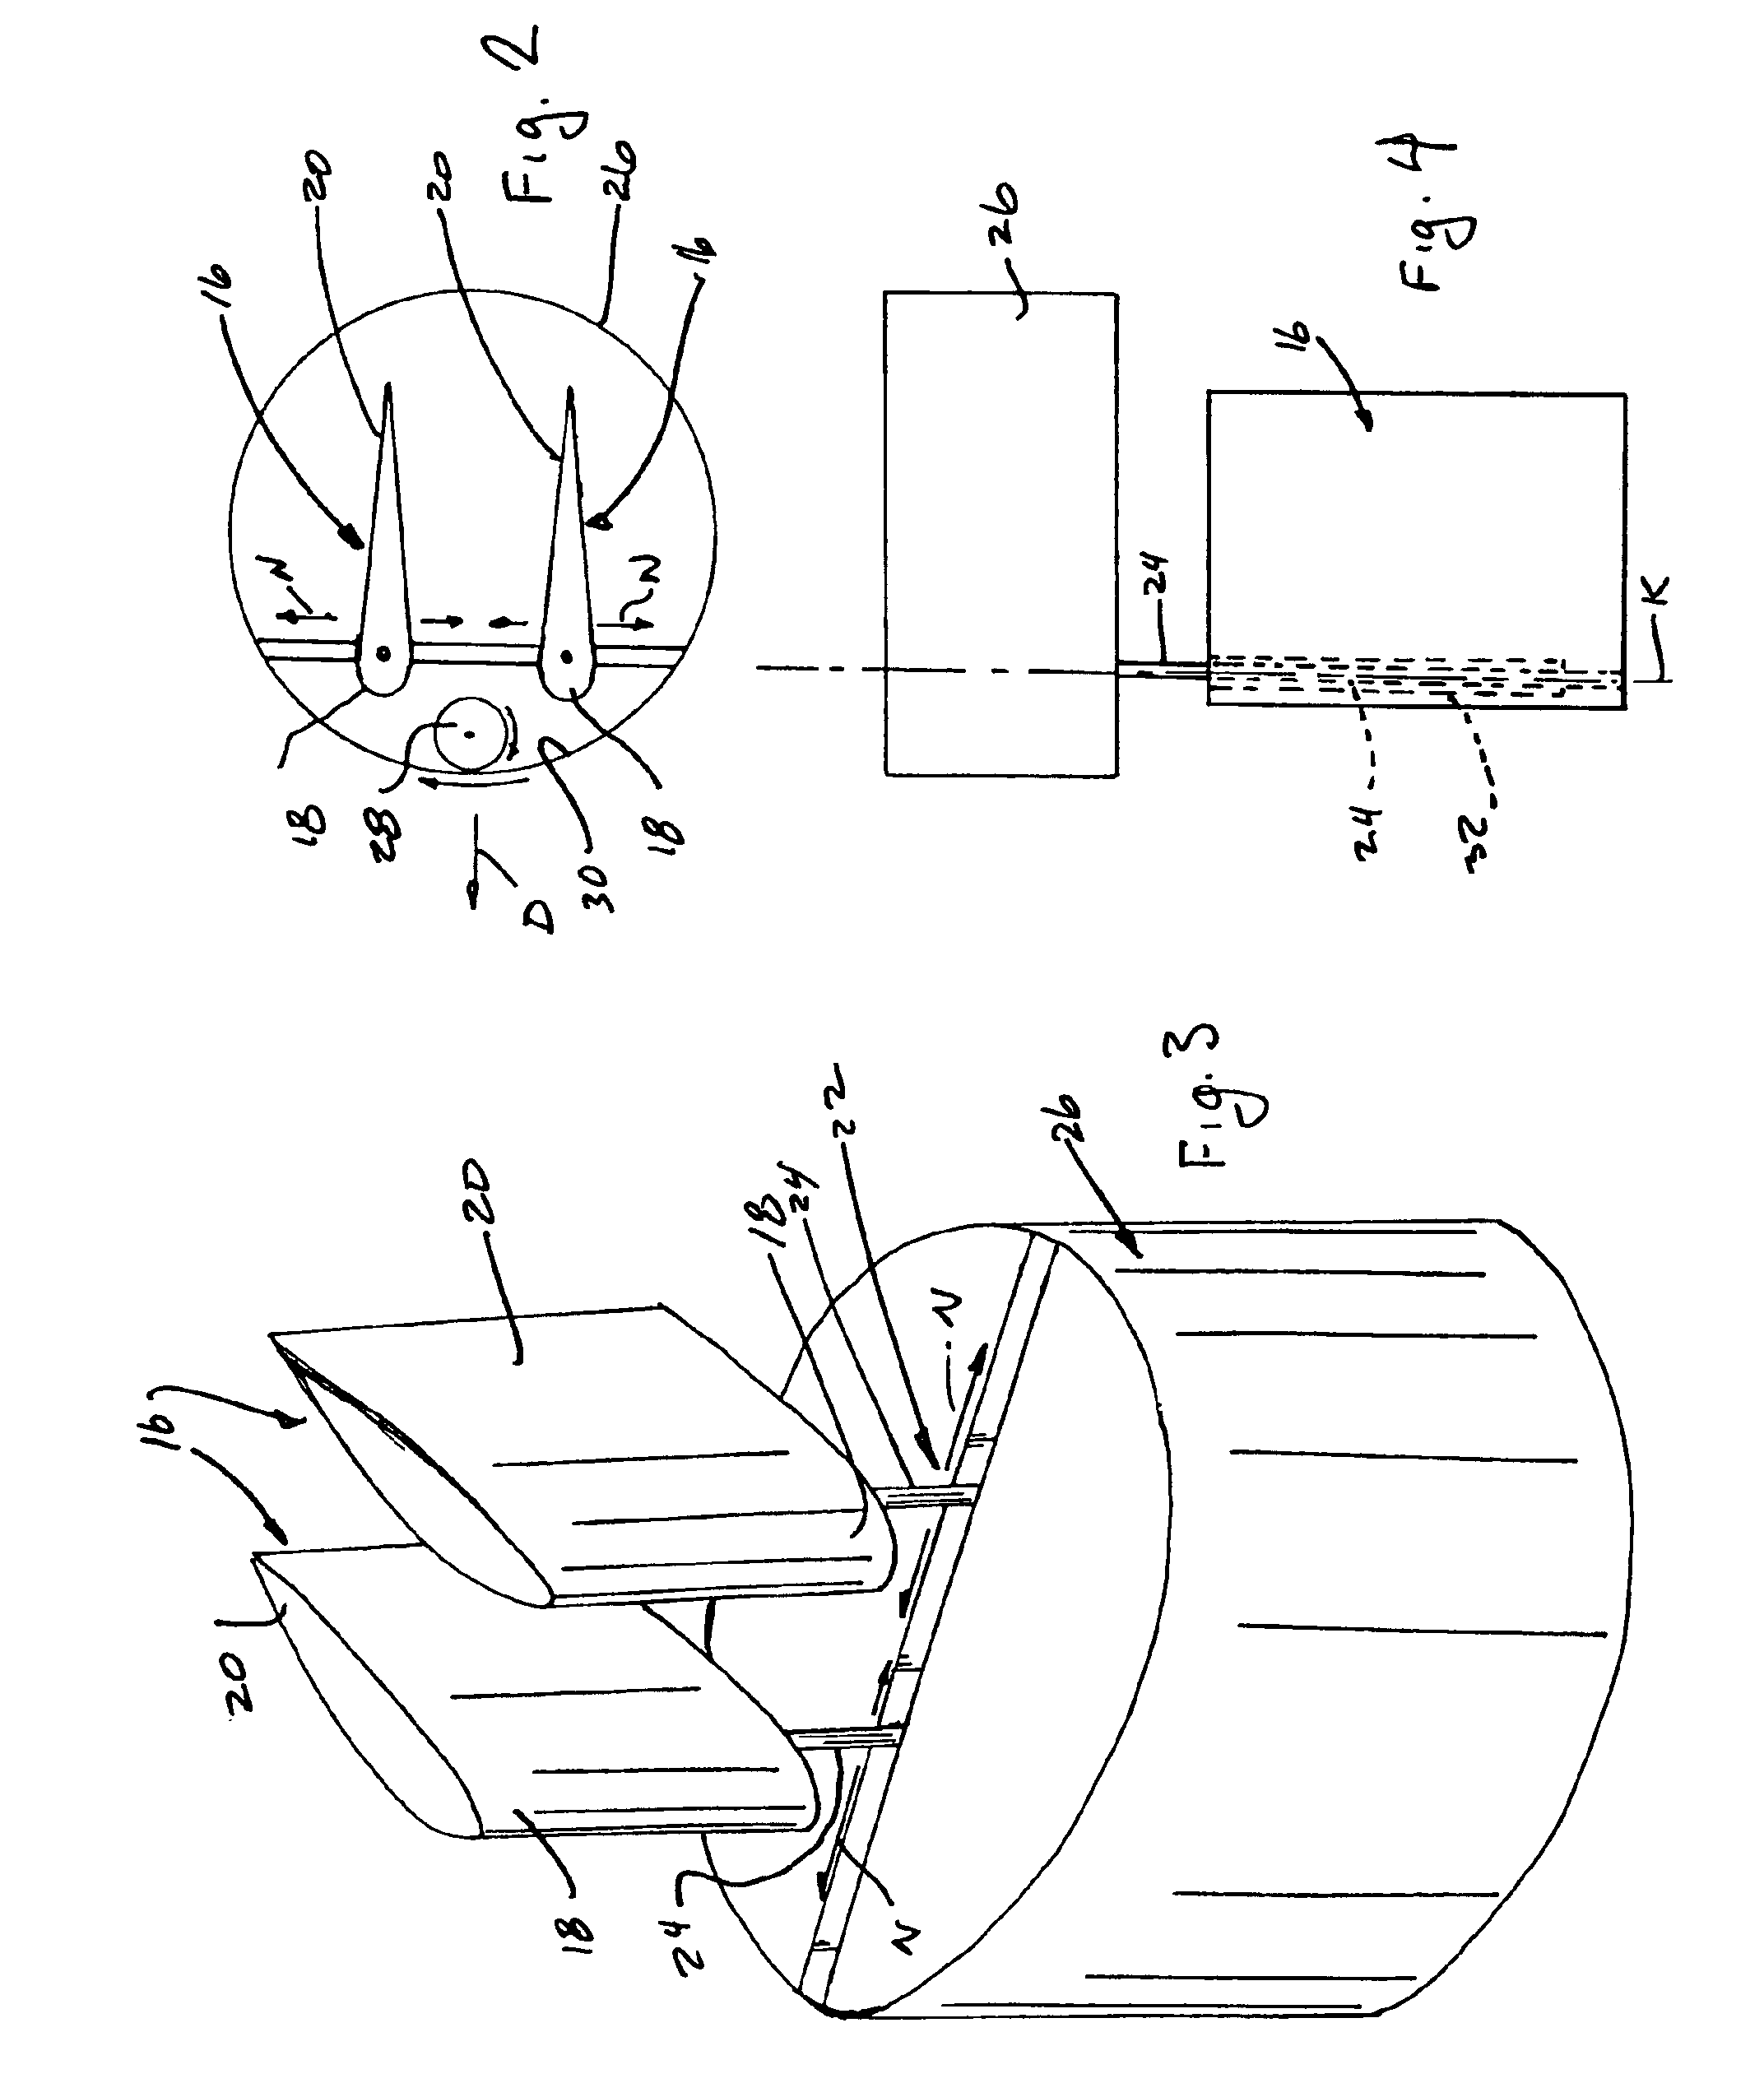 Oscillating foil propulsion system